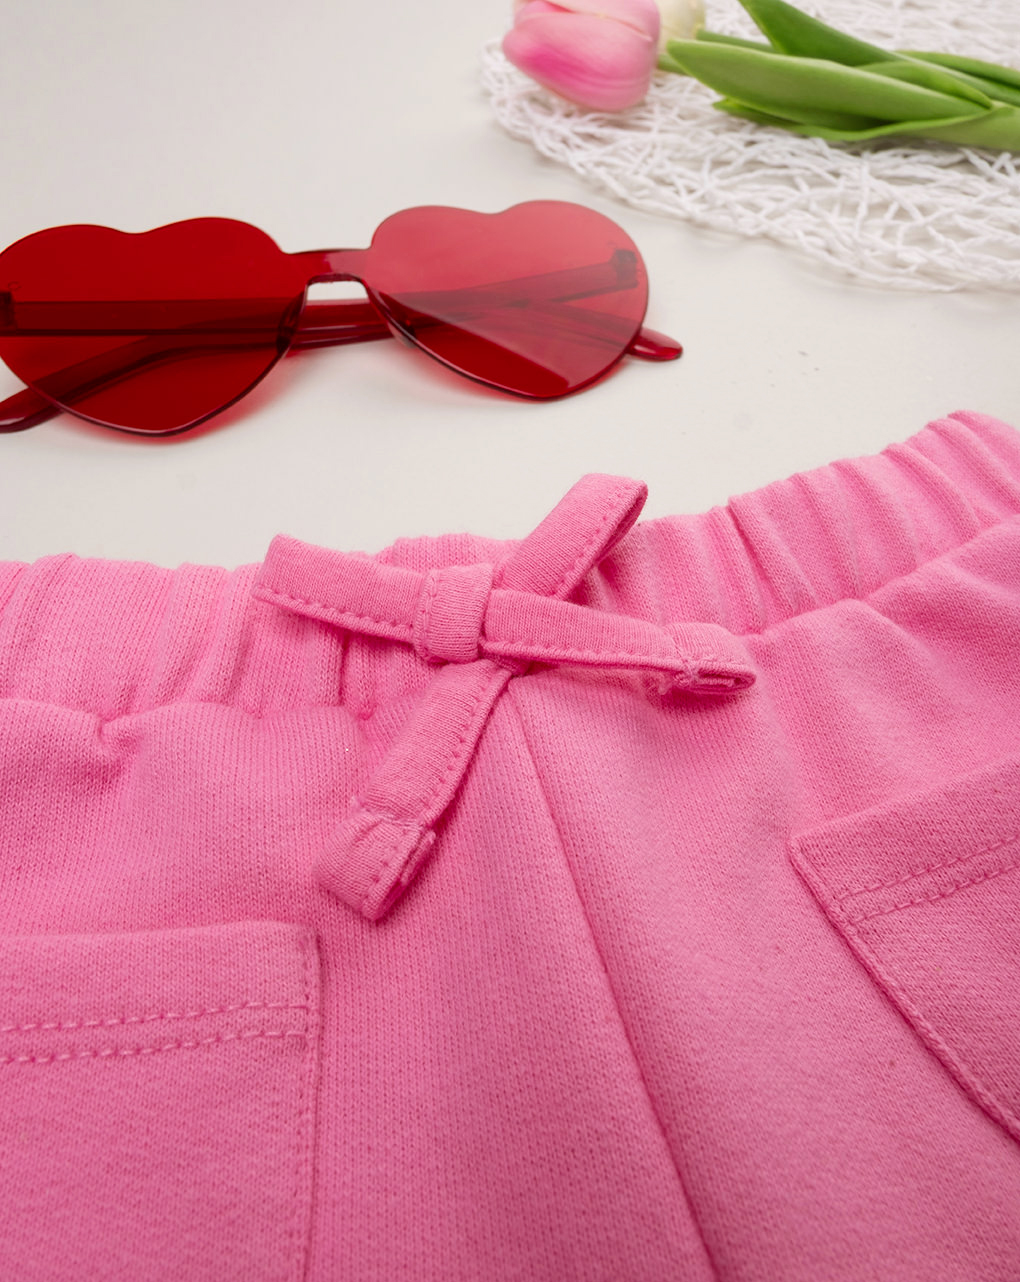 Pantalón rosa de niña - Prénatal